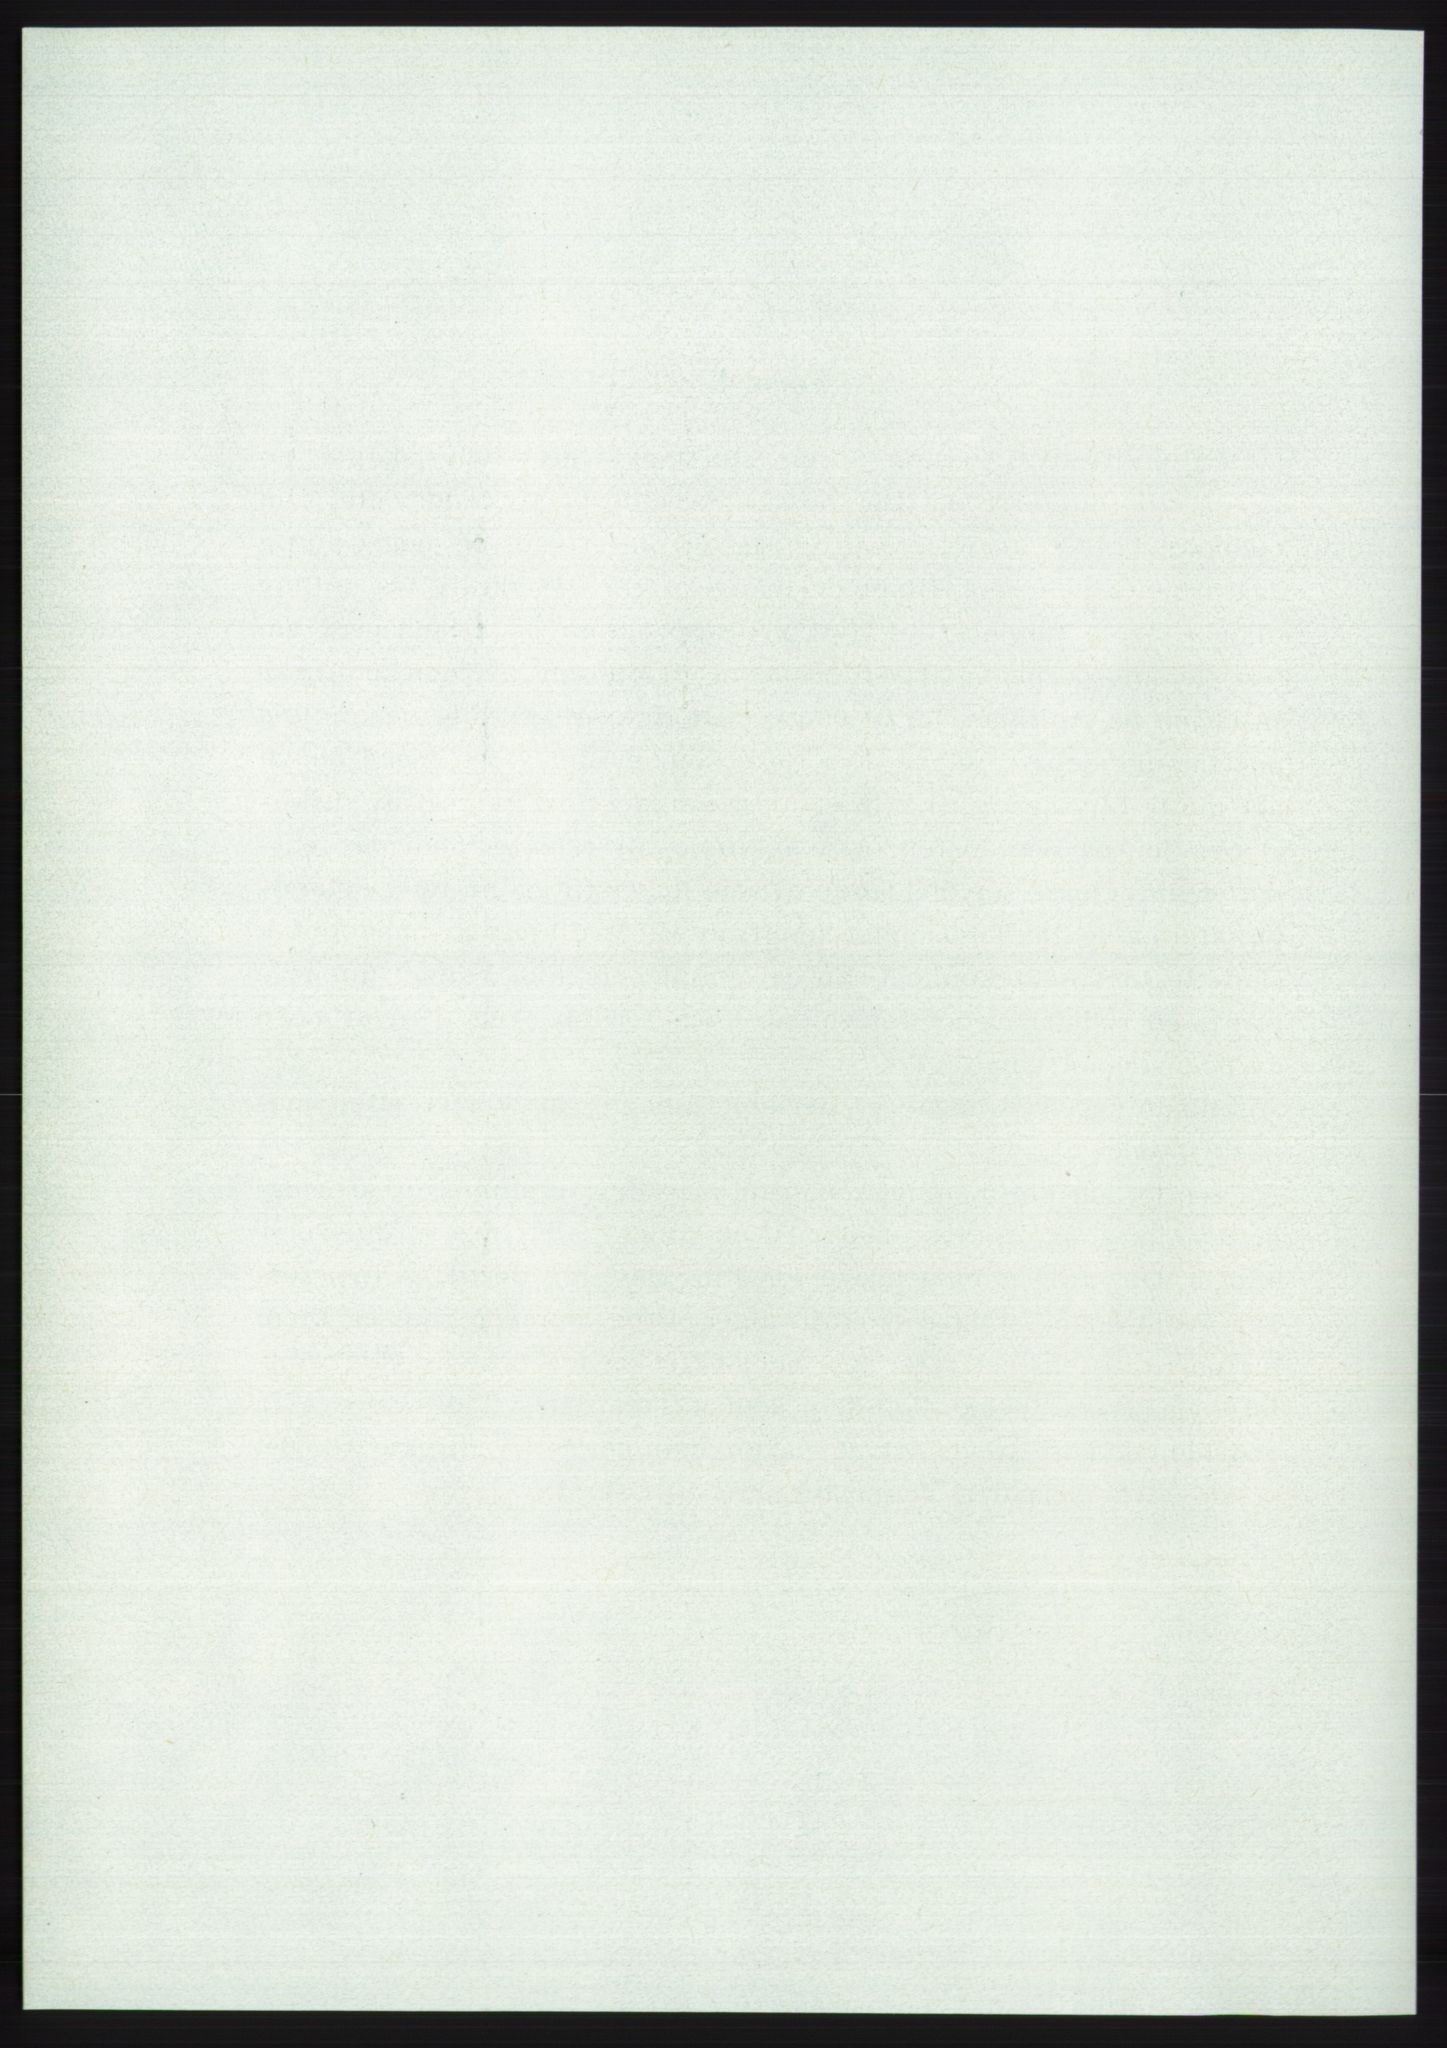 Det norske Arbeiderparti - publikasjoner, AAB/-/-/-: Protokoll over forhandlingene på det 42. ordinære landsmøte 11.-14. mai 1969 i Oslo, 1969